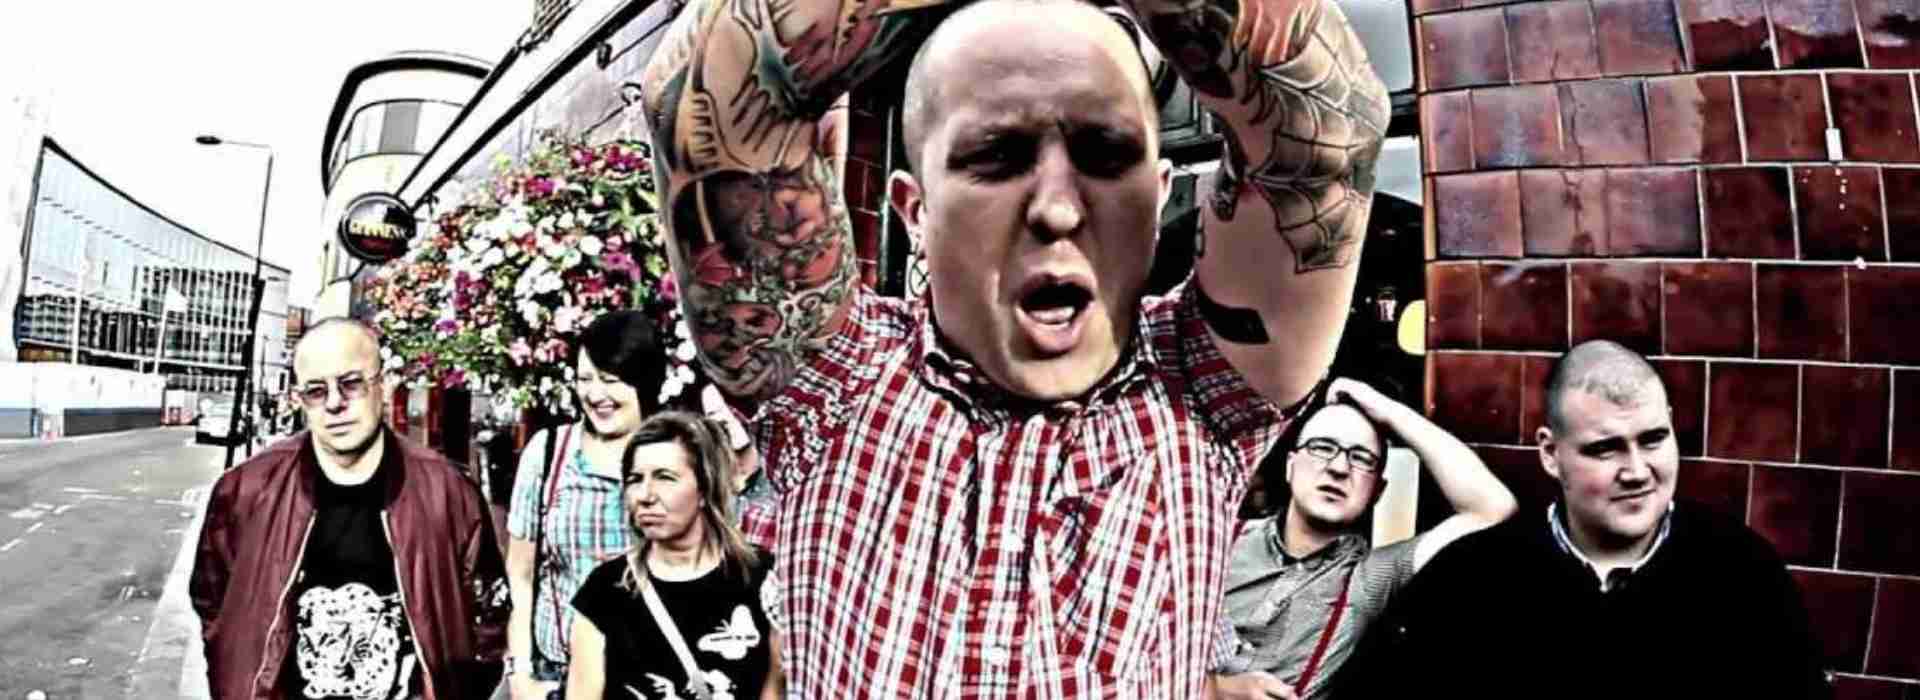 Booze & Glory: la band punk che odia il potere al ritmo di "London Skinhead Crew"